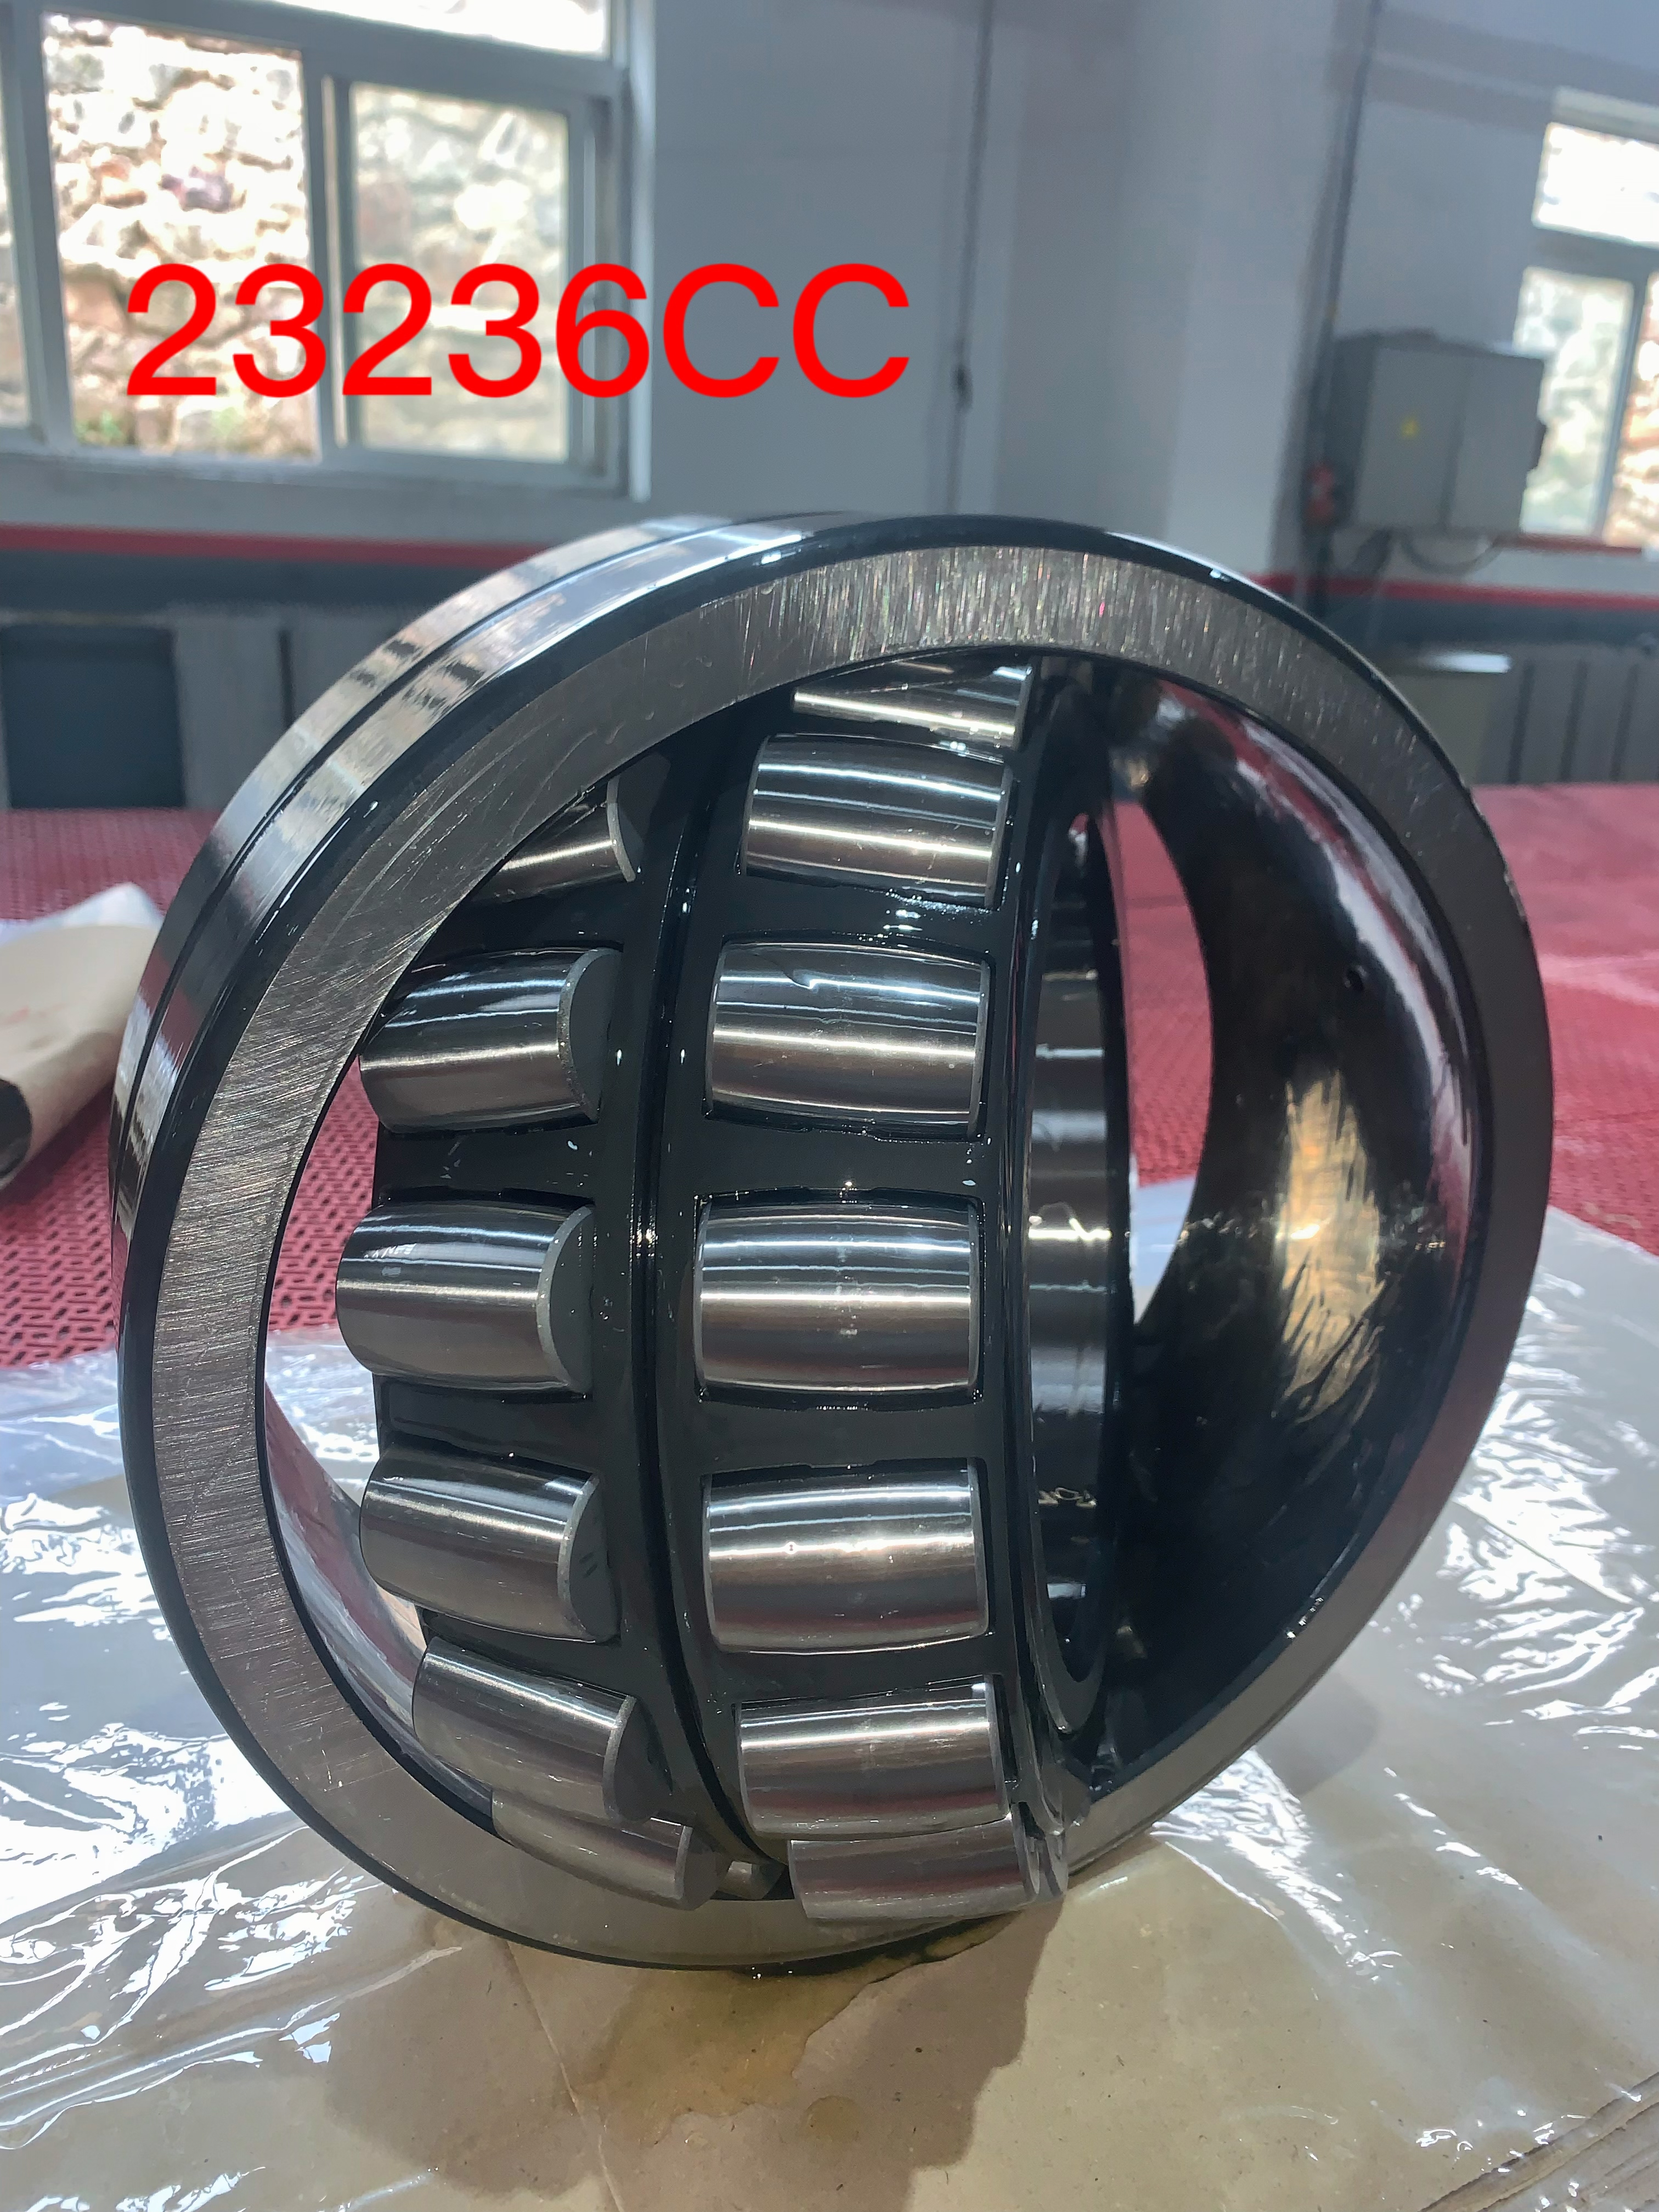 BI is exclusive distributor for Cross Ocean spherical roller bearings